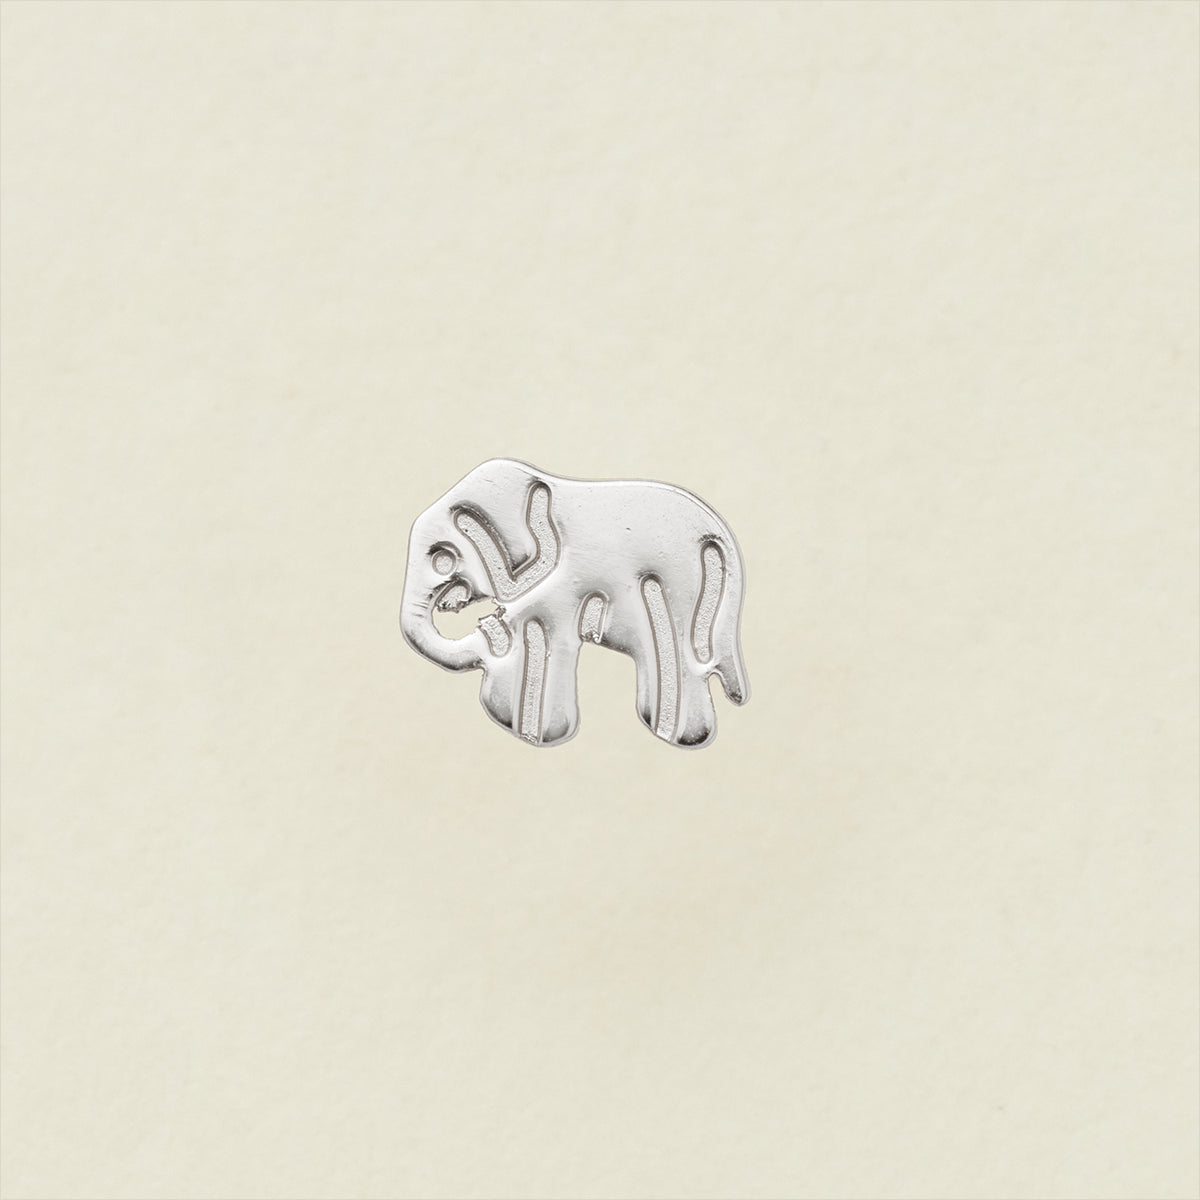 Lucky Stud Earring - Silver Silver / Elephant Earring